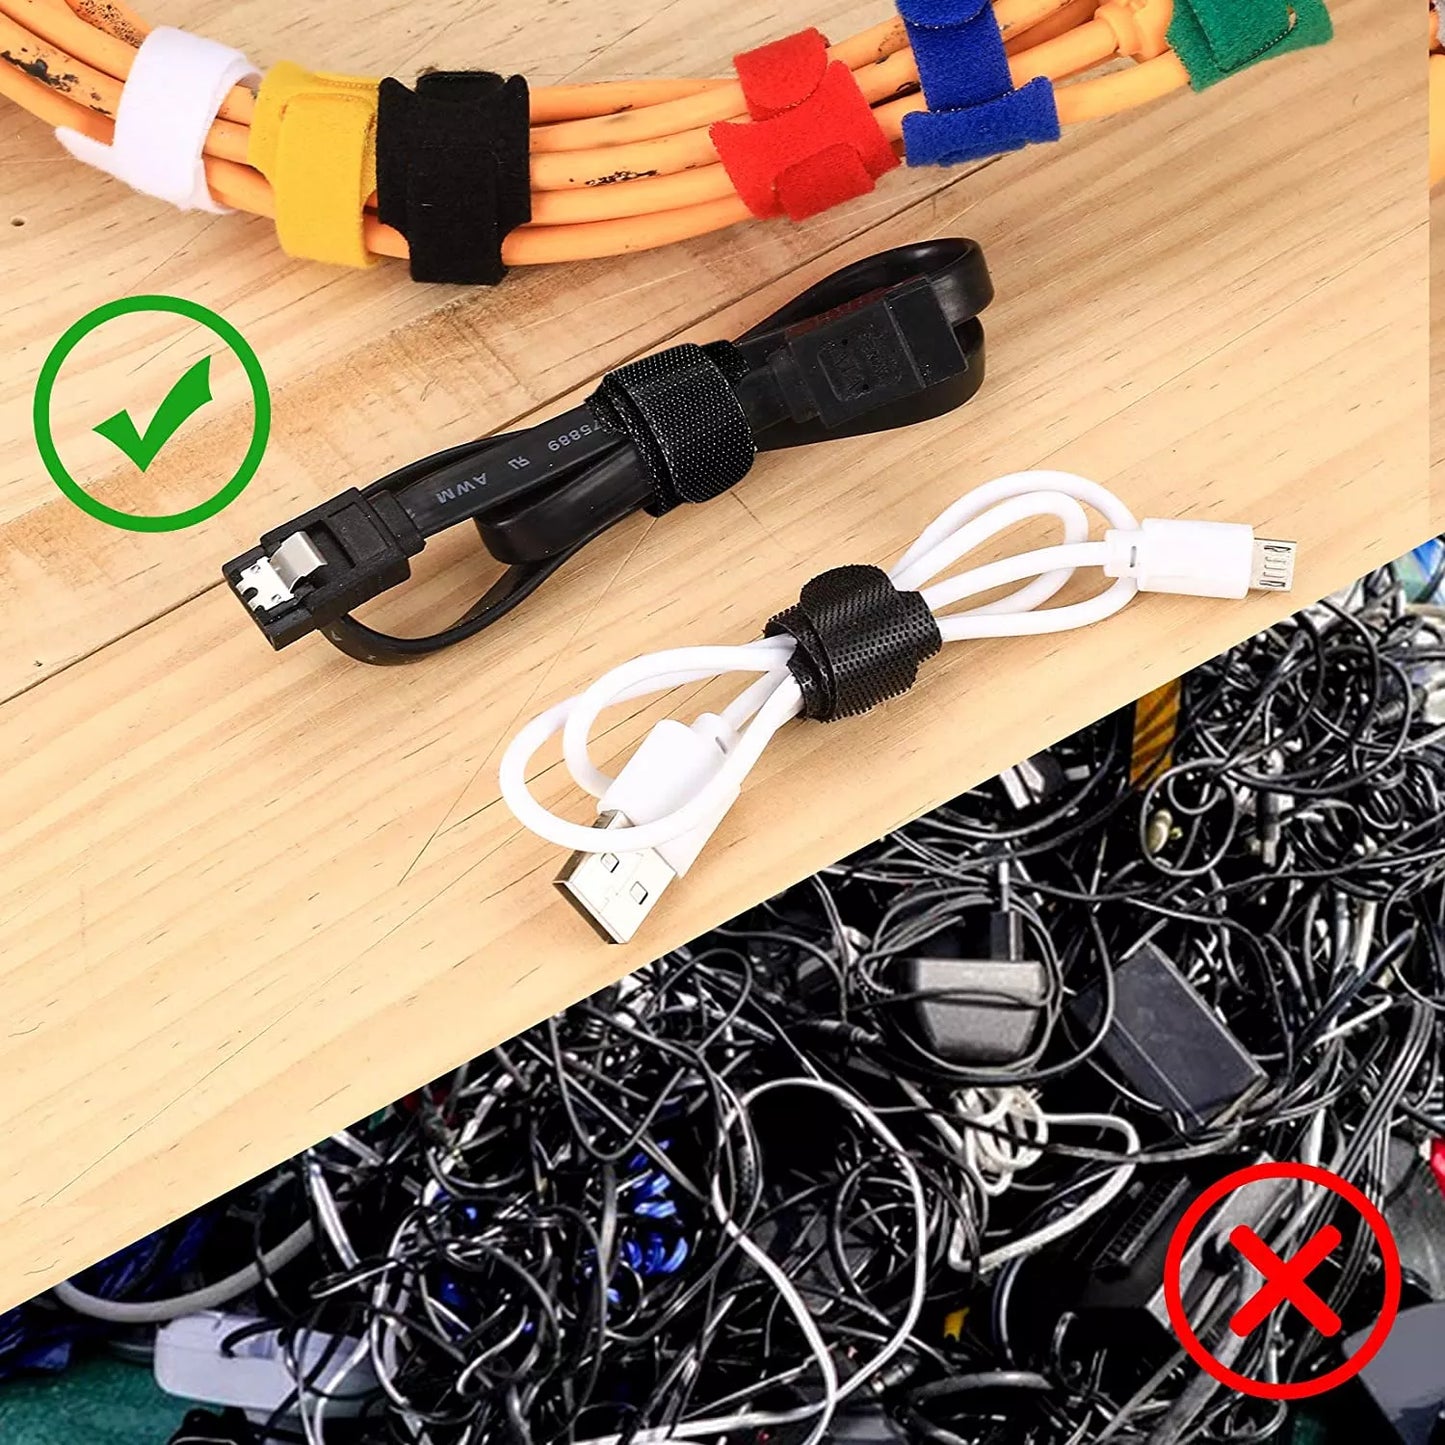 Organizador de Cables / Velcros | 5 Pack | Reutilizables | 15cm / 20cm / 25cm | Nylon | CCE-ORG-02